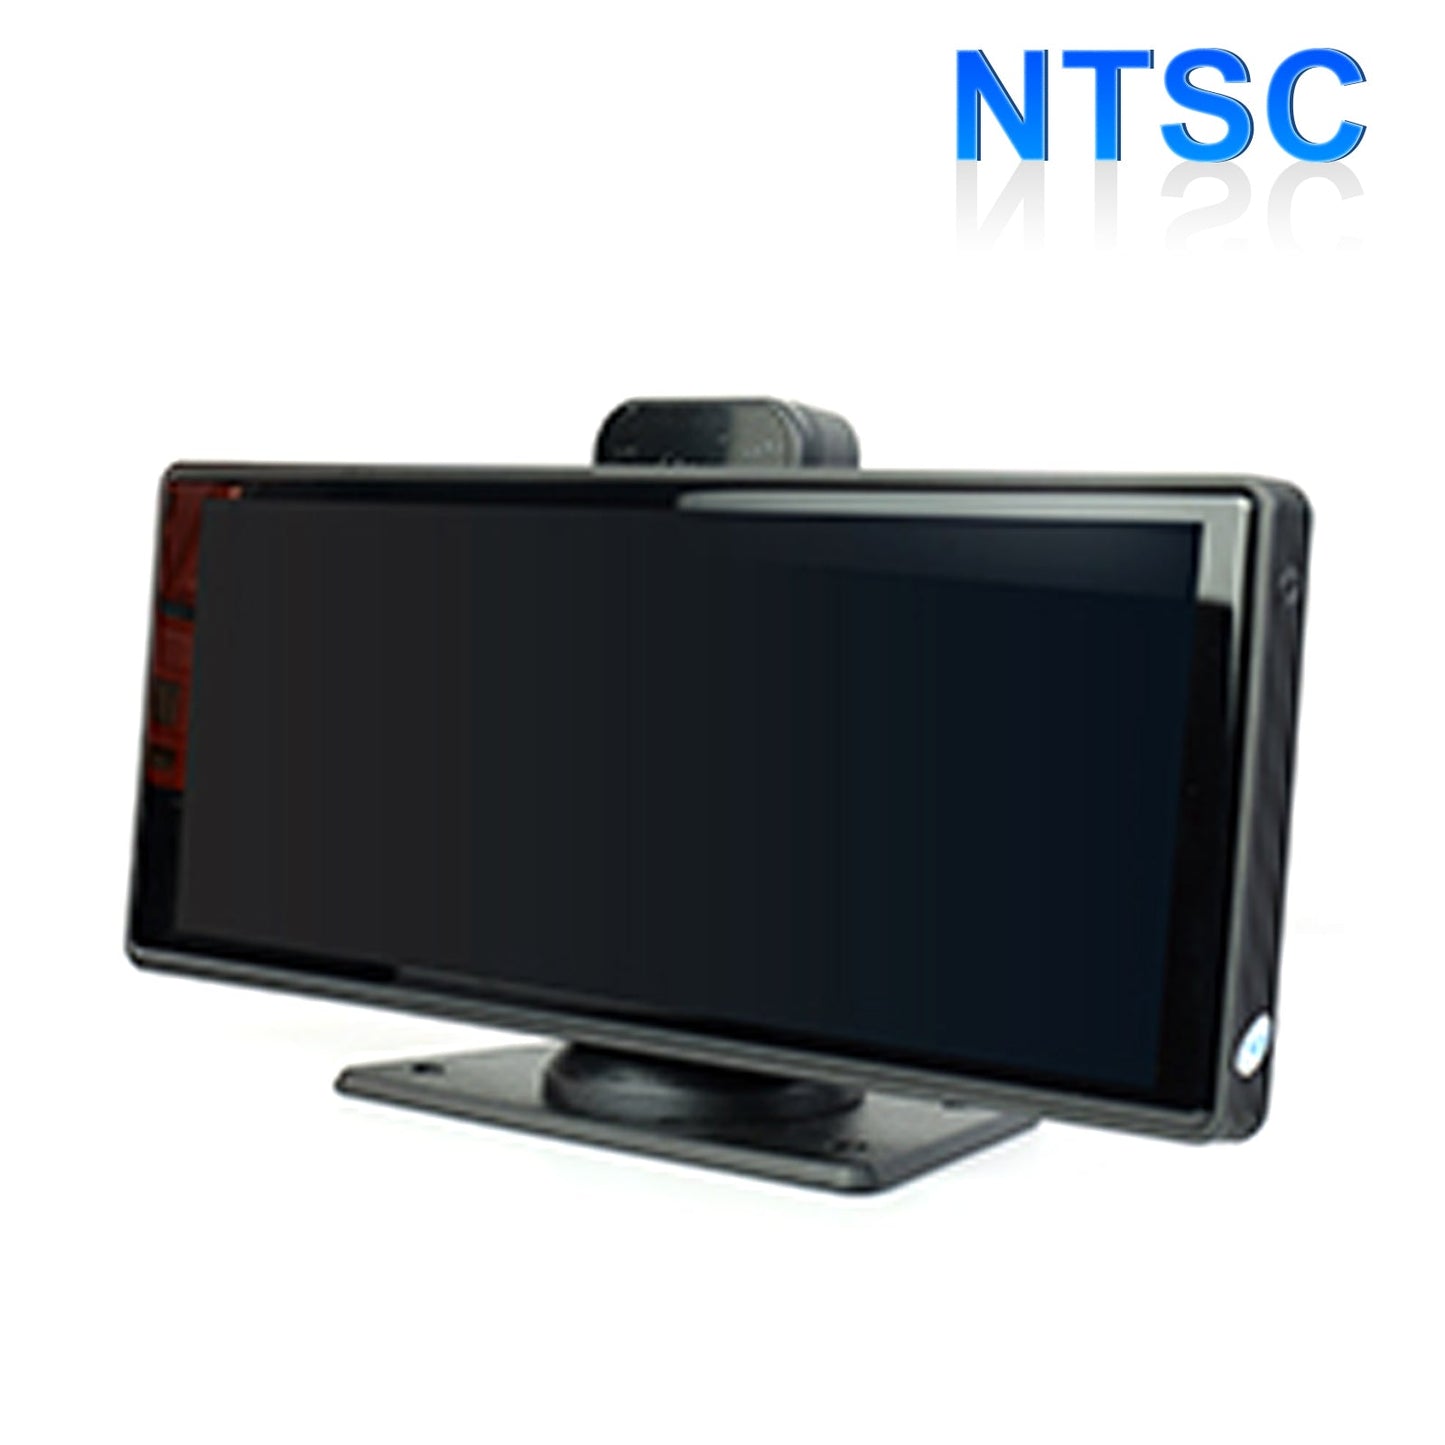 Formato NTSC DVR Smart Screen da 10,26" per autobus camper e telecamera di retromarcia